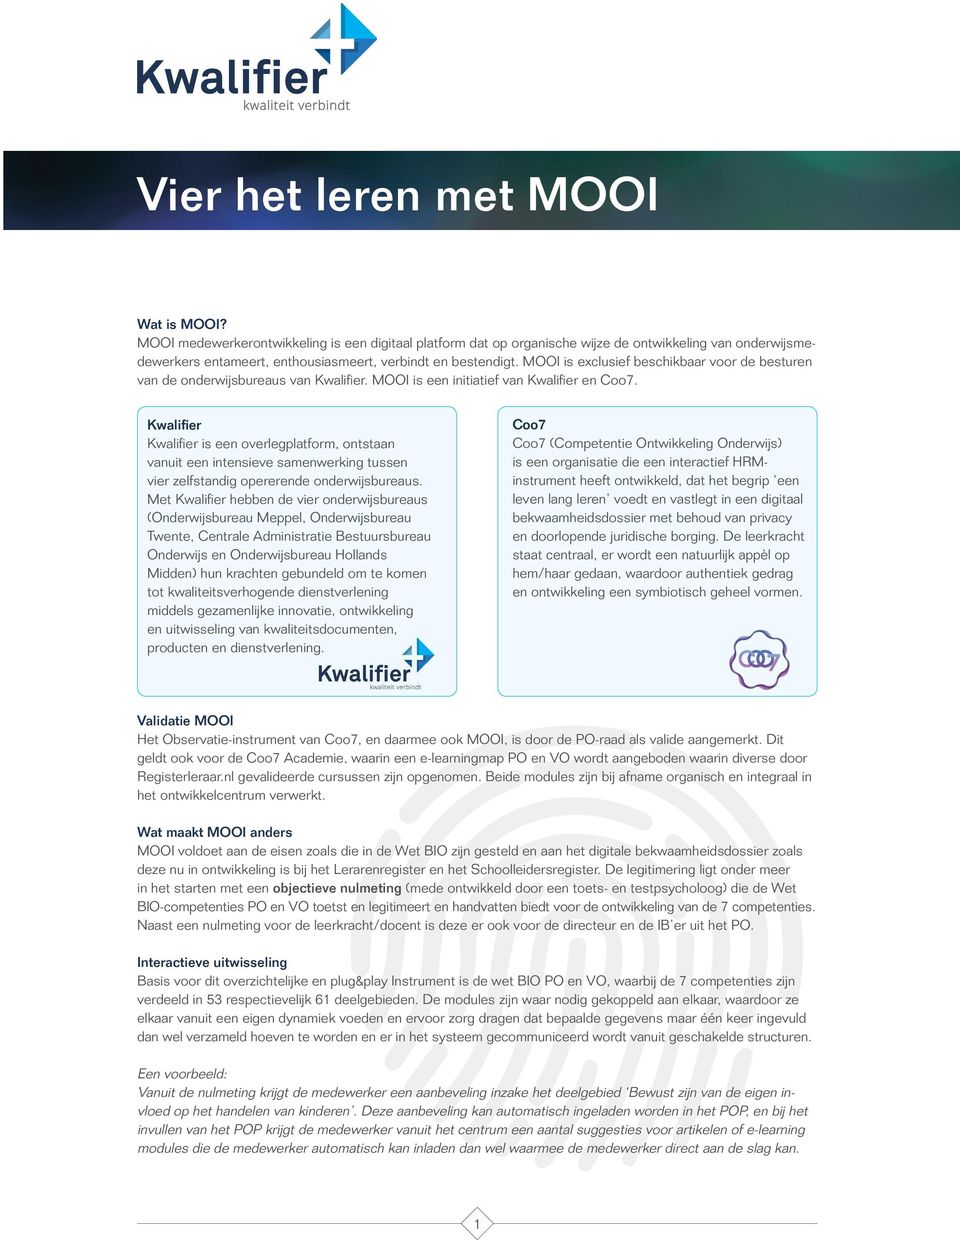 MOOI is exclusief beschikbaar voor de besturen van de onderwijsbureaus van Kwalifier. MOOI is een initiatief van Kwalifier en Coo7.